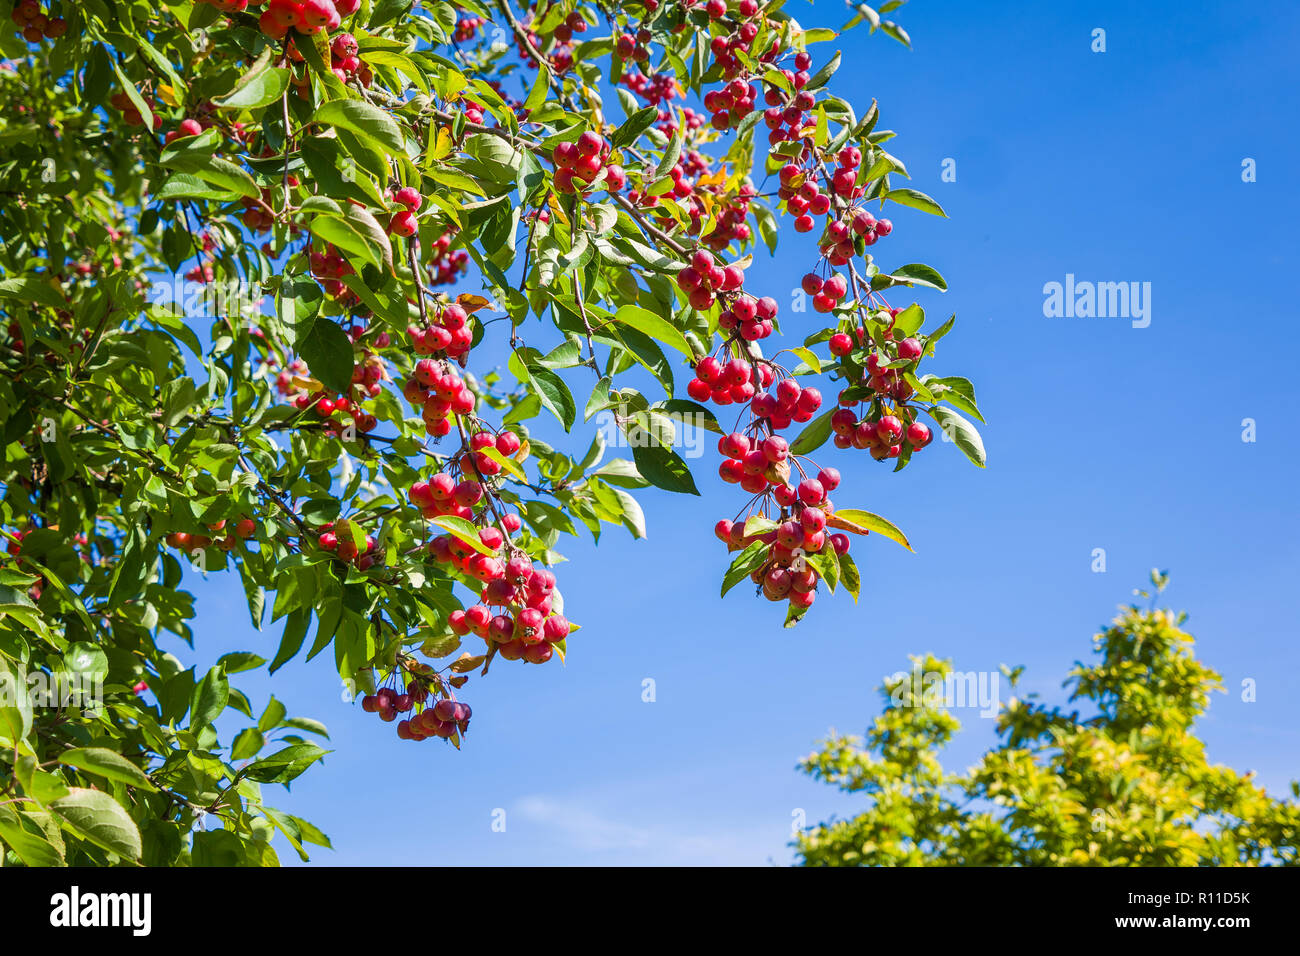 China cojinete del árbol de manzana fruta roja brillante en septiembre en un jardín inglés en UK Foto de stock